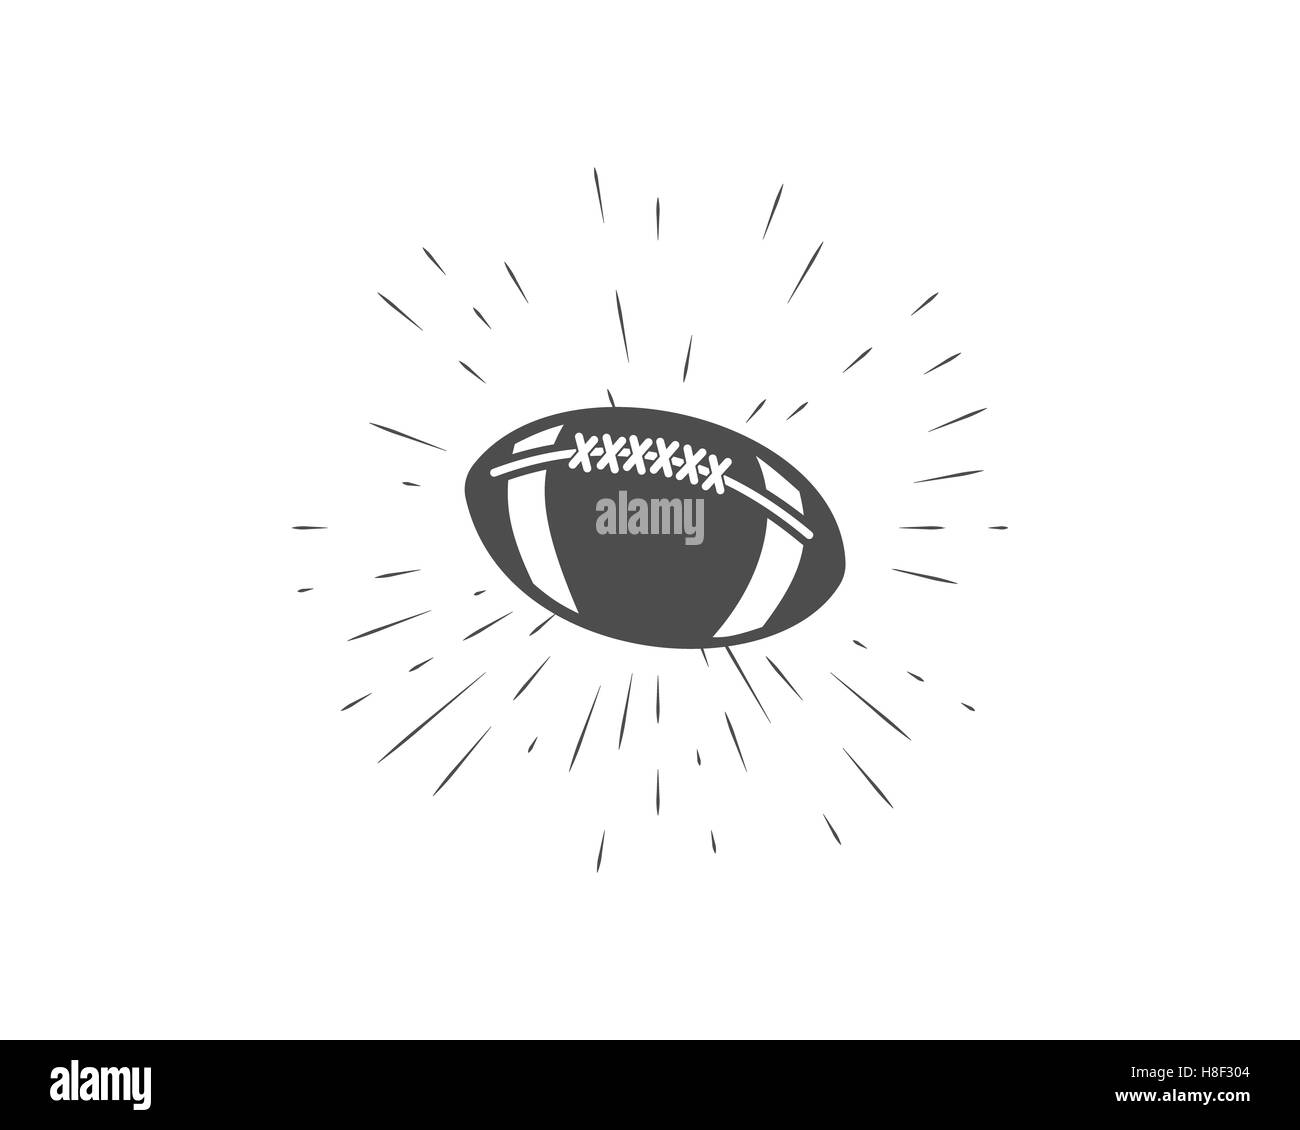 American Vintage etiqueta de fútbol y rugby, emblema y diseño de logotipo  con sunburst elemento. Dibujados a mano de estilo monocromo con balón.  Deportes de EE.UU. Símbolo de identidad ilustración Fotografía de